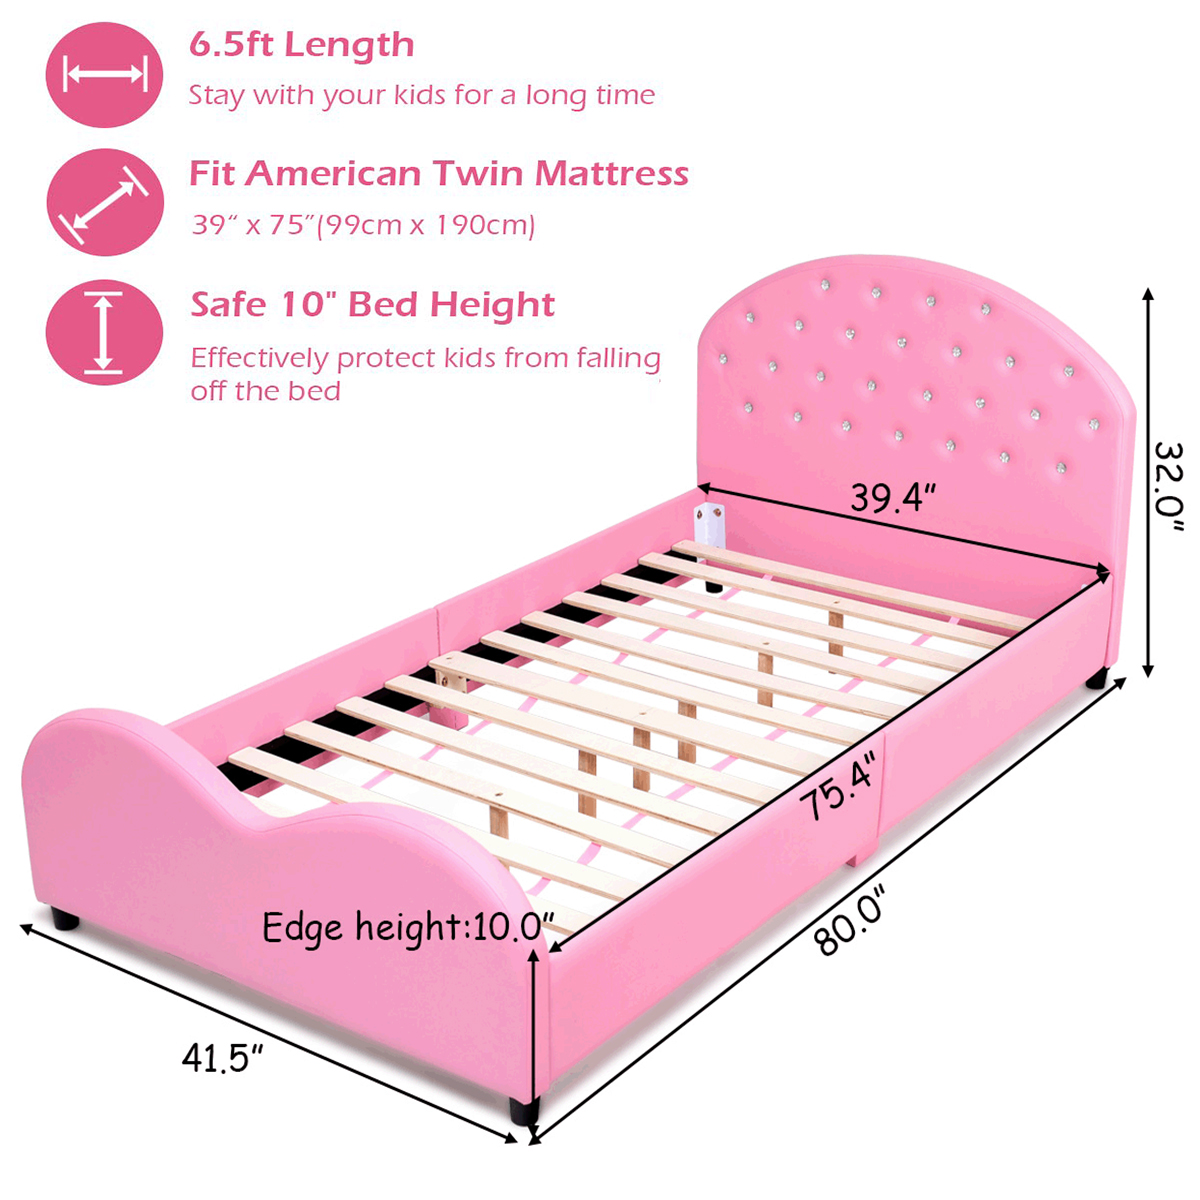 Costway Kids Children PU Upholstered Platform Wooden Princess Bed Bedroom Furniture Pink - image 6 of 9